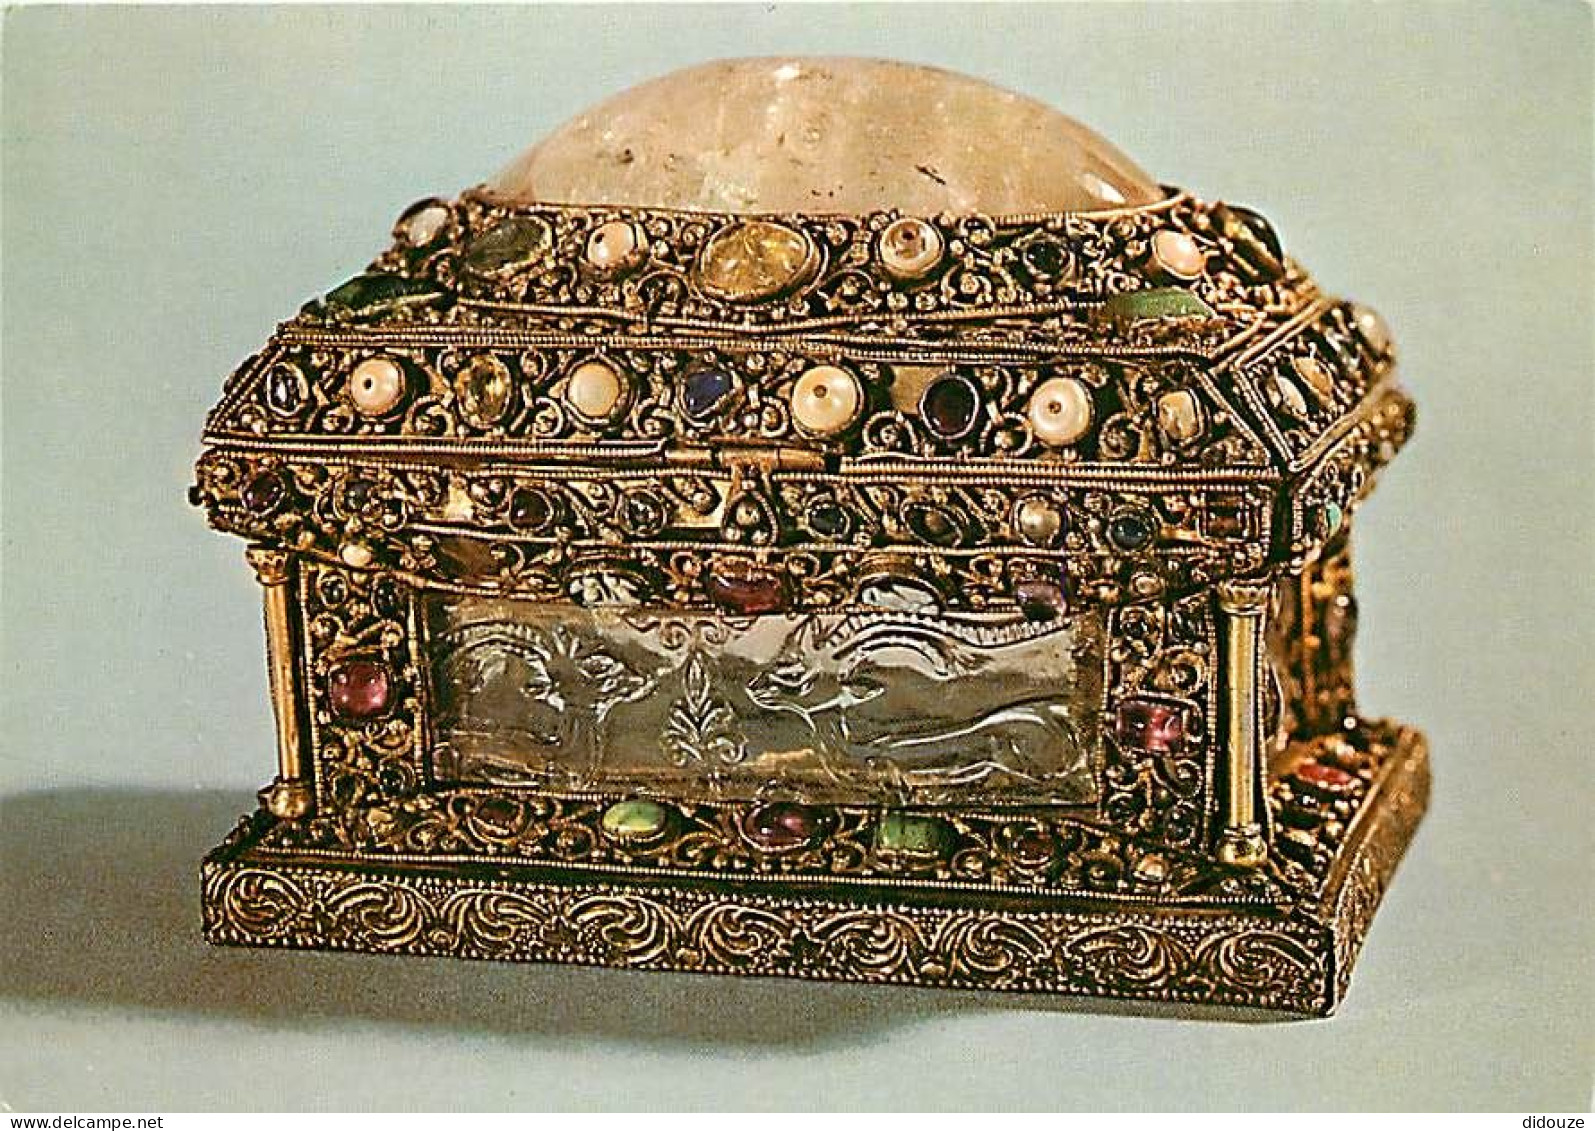 Art - Antiquité - Musée Des Thermes Et De L'Hôtel De Cluny De Paris - Coffret - Cristaux De Roche Fatimide, D'environ 10 - Ancient World